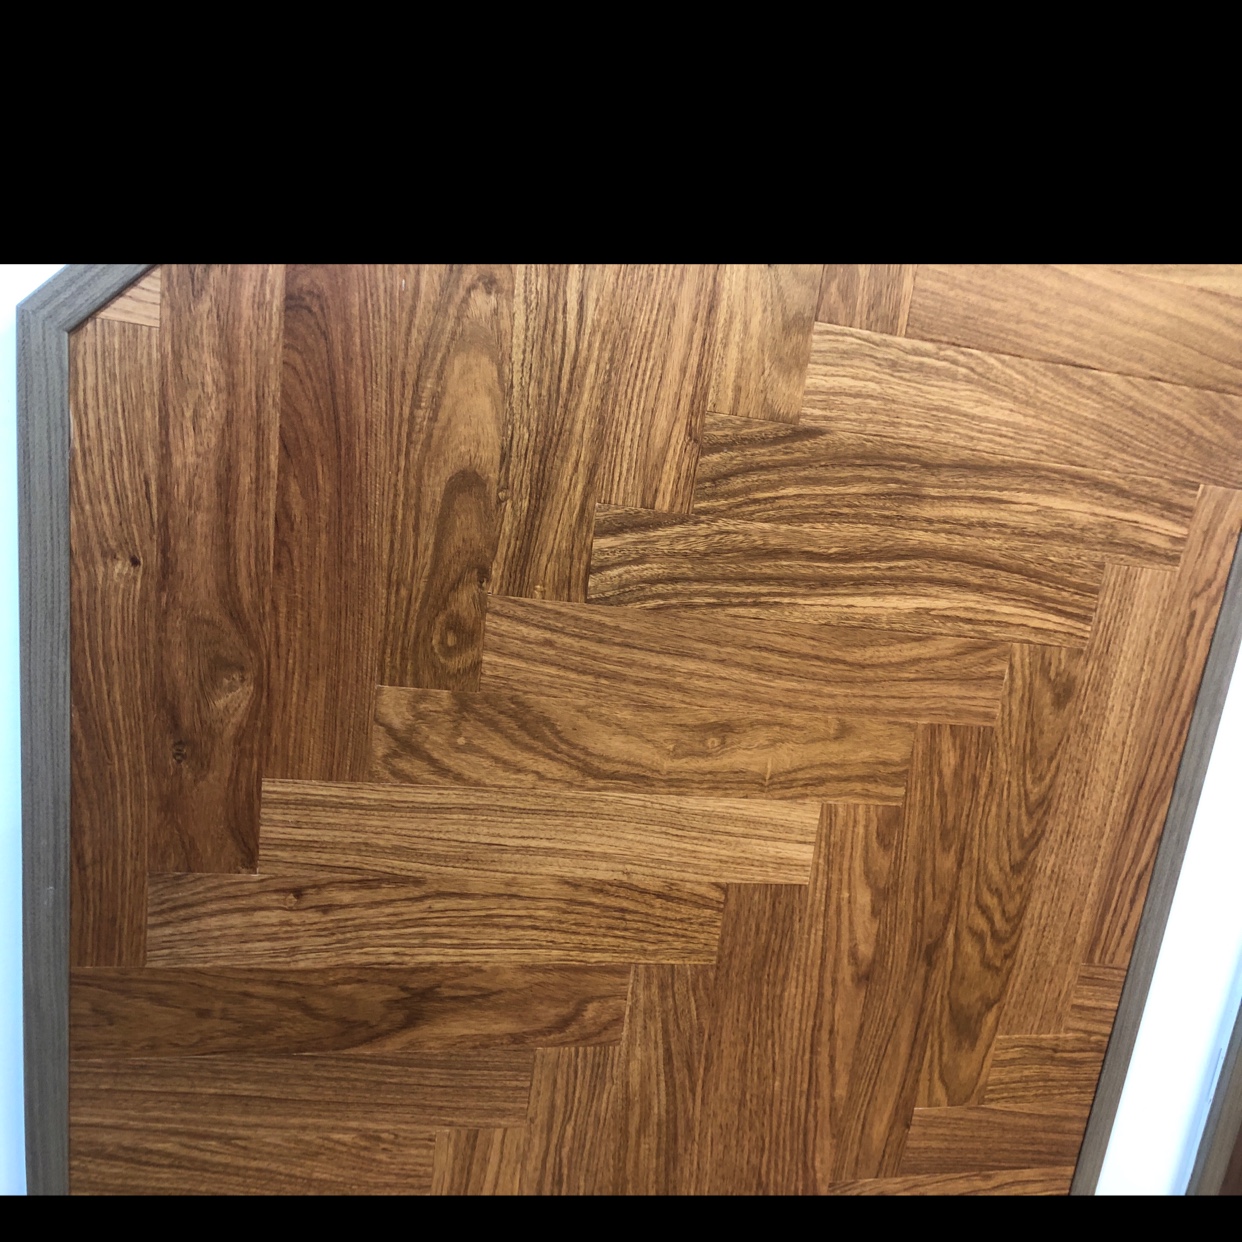 亚花梨北欧美式风格大自然原木色客厅卧室家用原木实木地板强化复合木地板详情图2